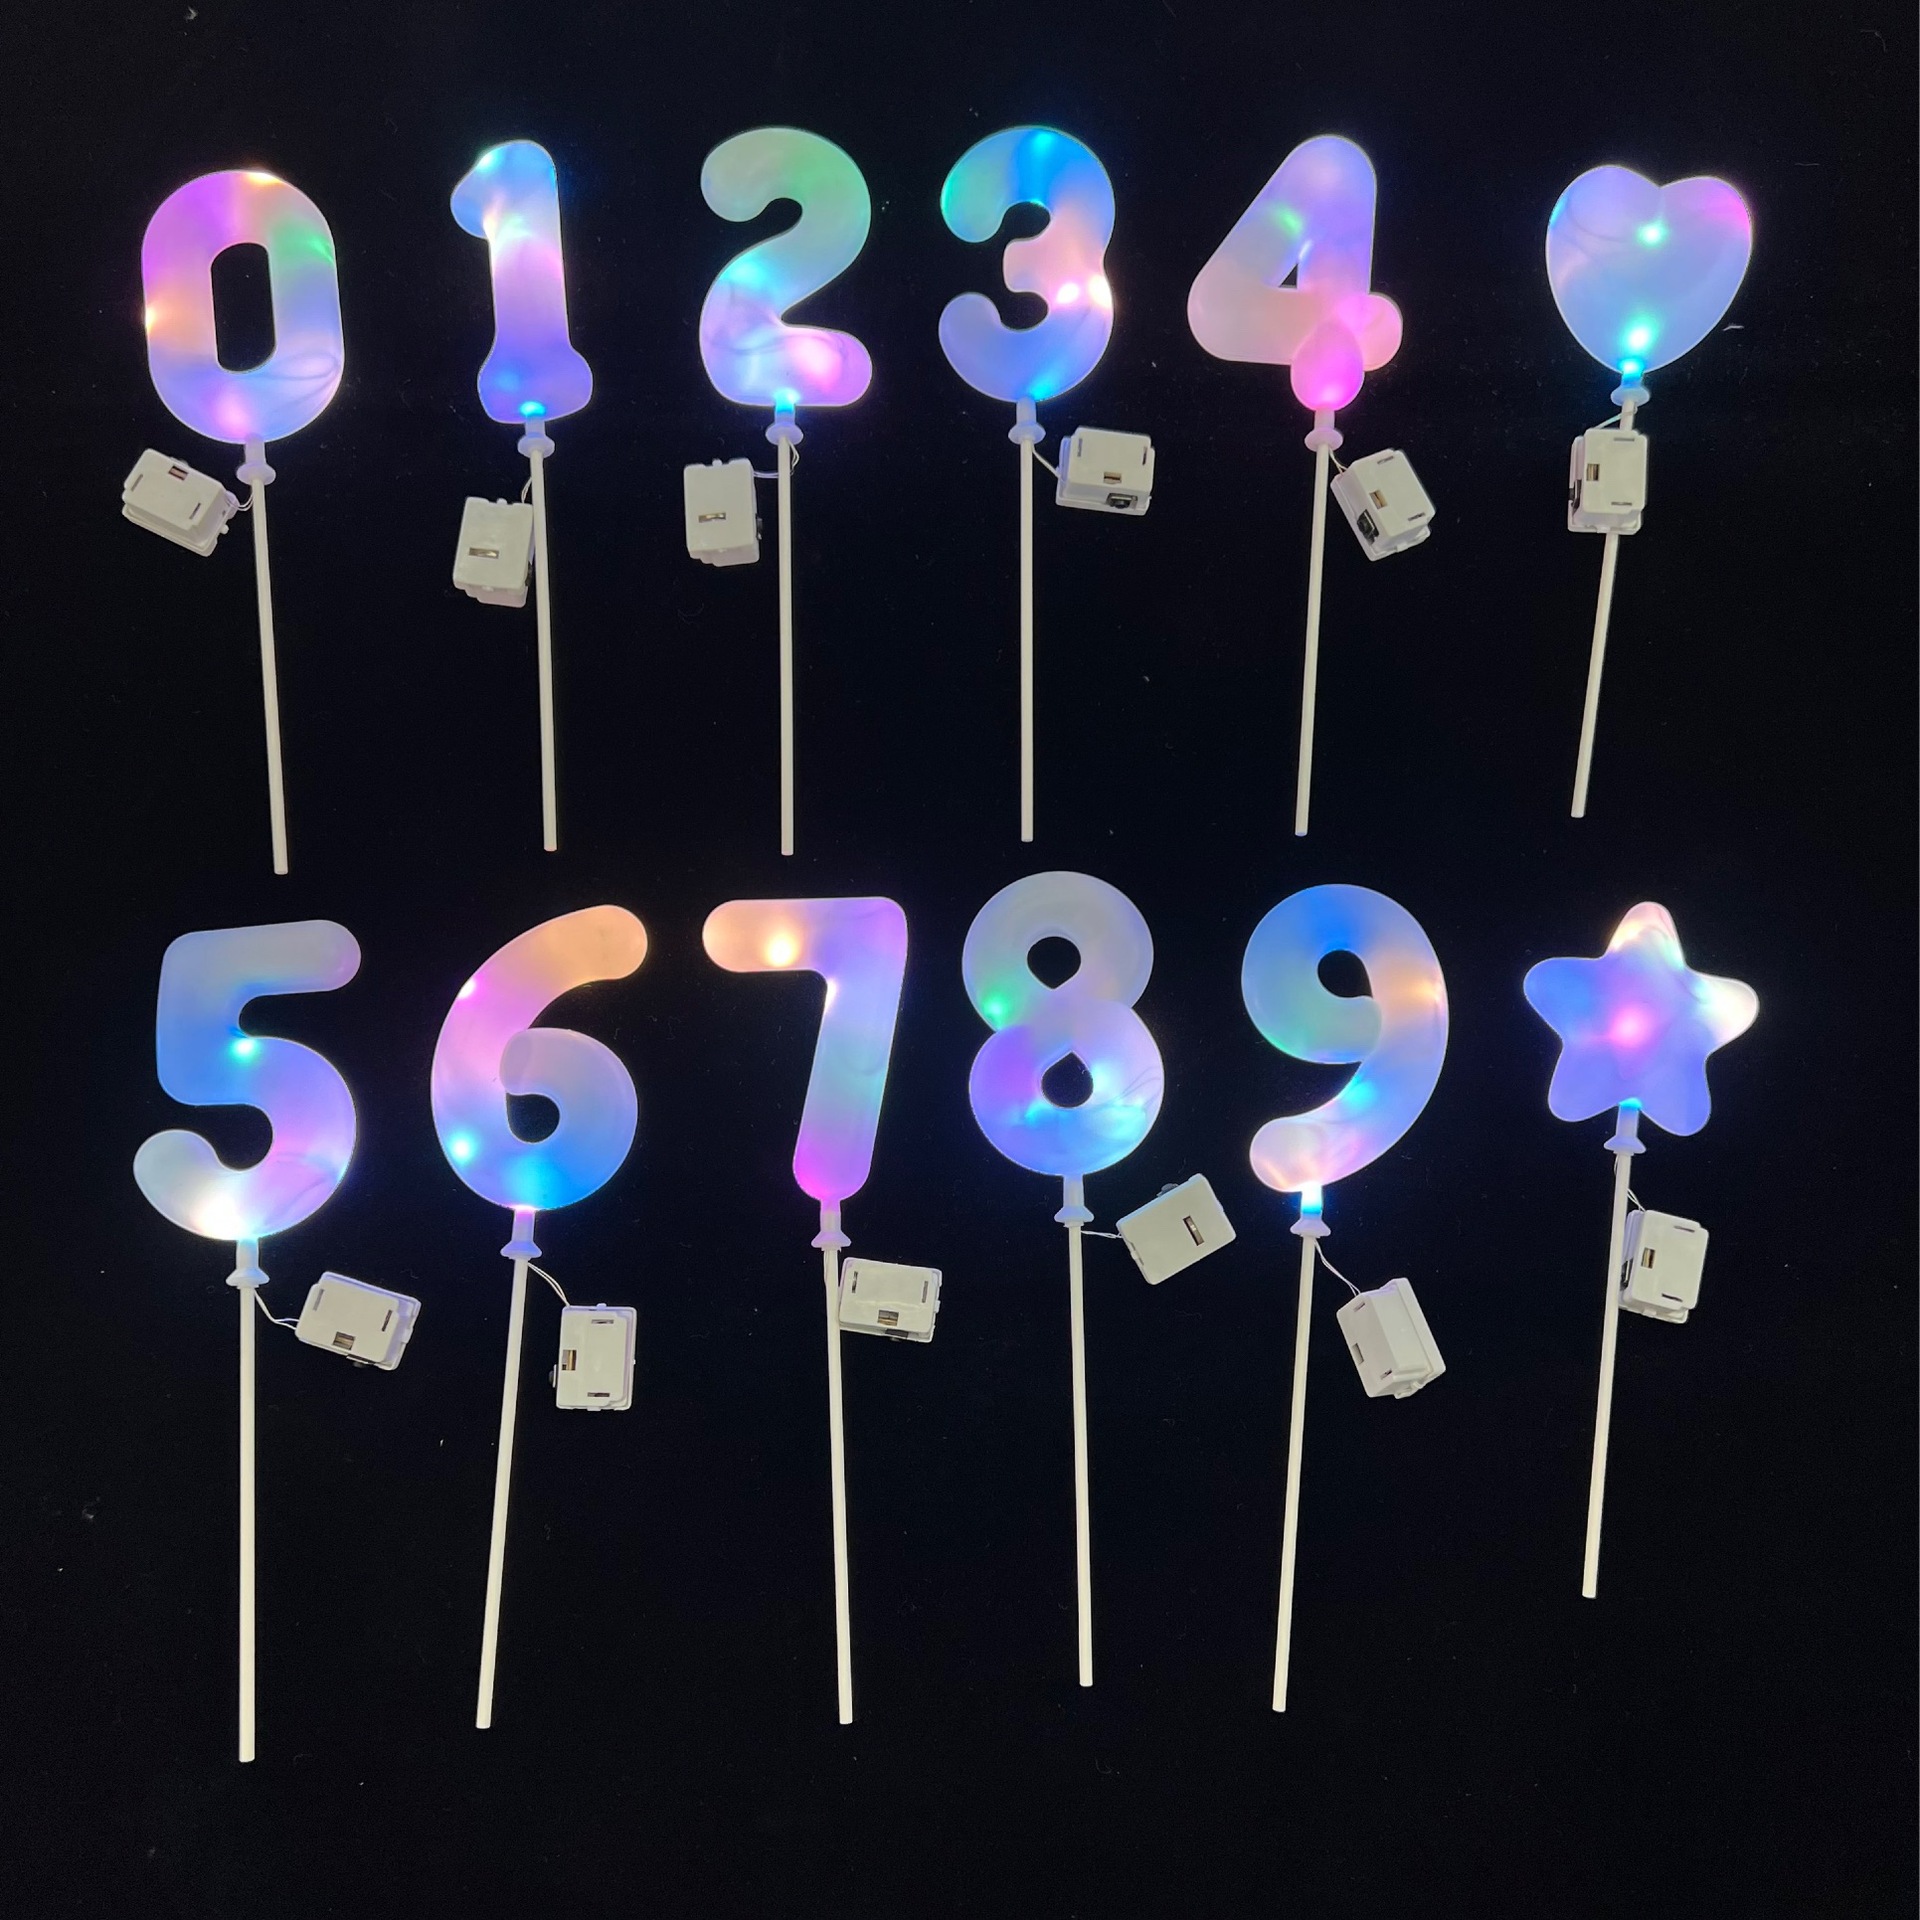 亚马逊生日蛋糕装饰 LED带灯数字蛋糕插件 烘焙甜品装扮花束装扮详情图2